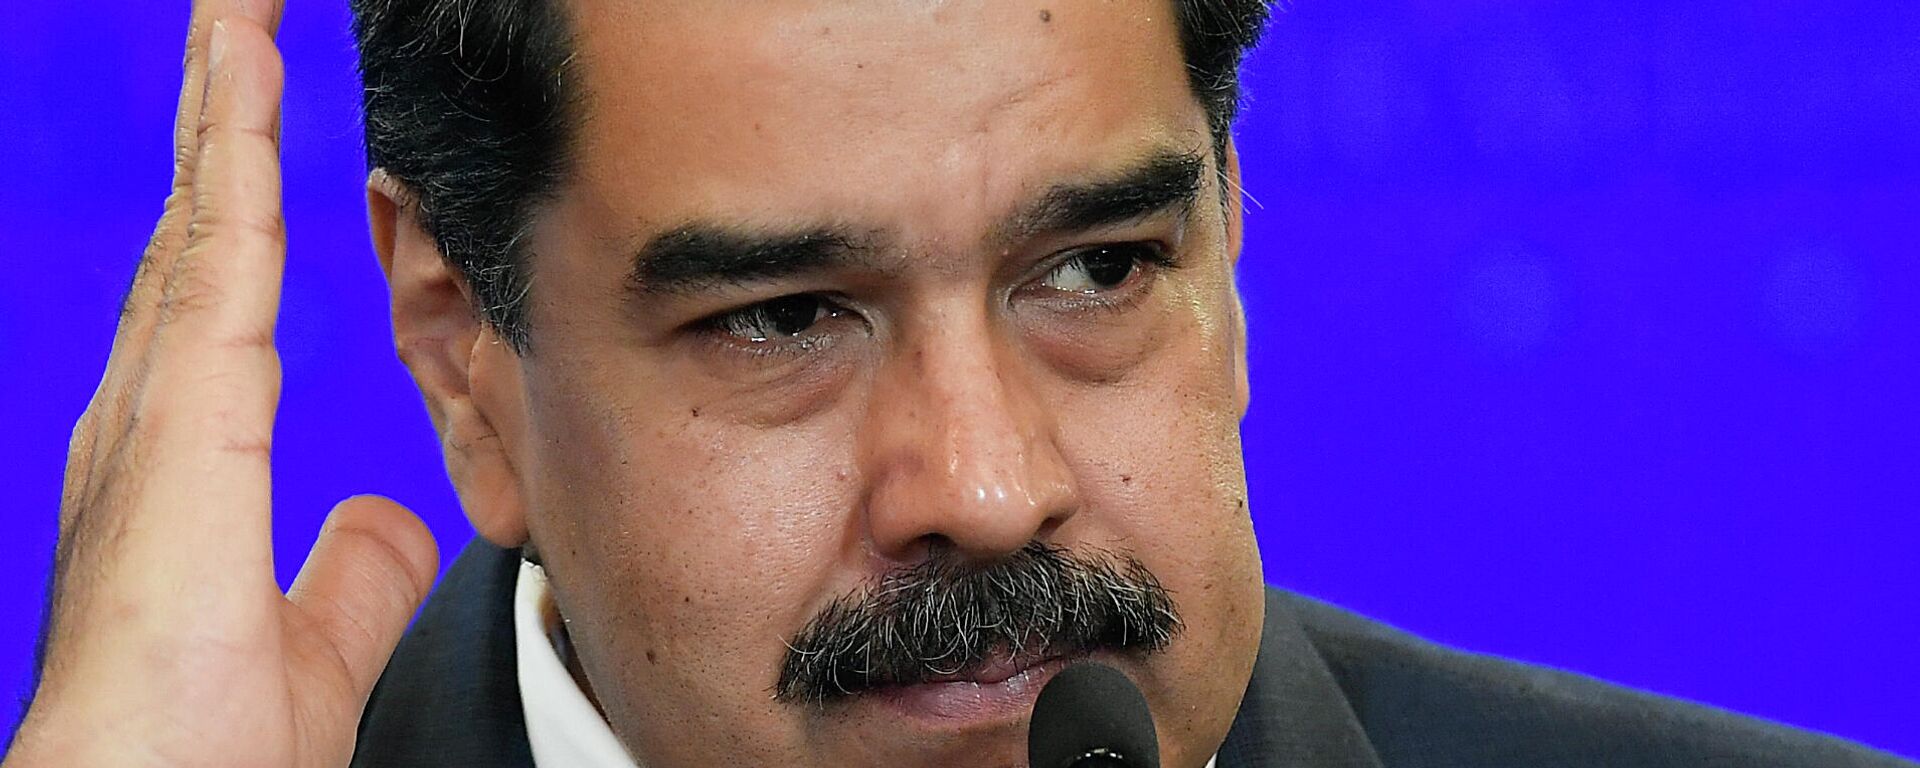 Nicolás Maduro, presidente de Venezuela - Sputnik Mundo, 1920, 07.09.2021